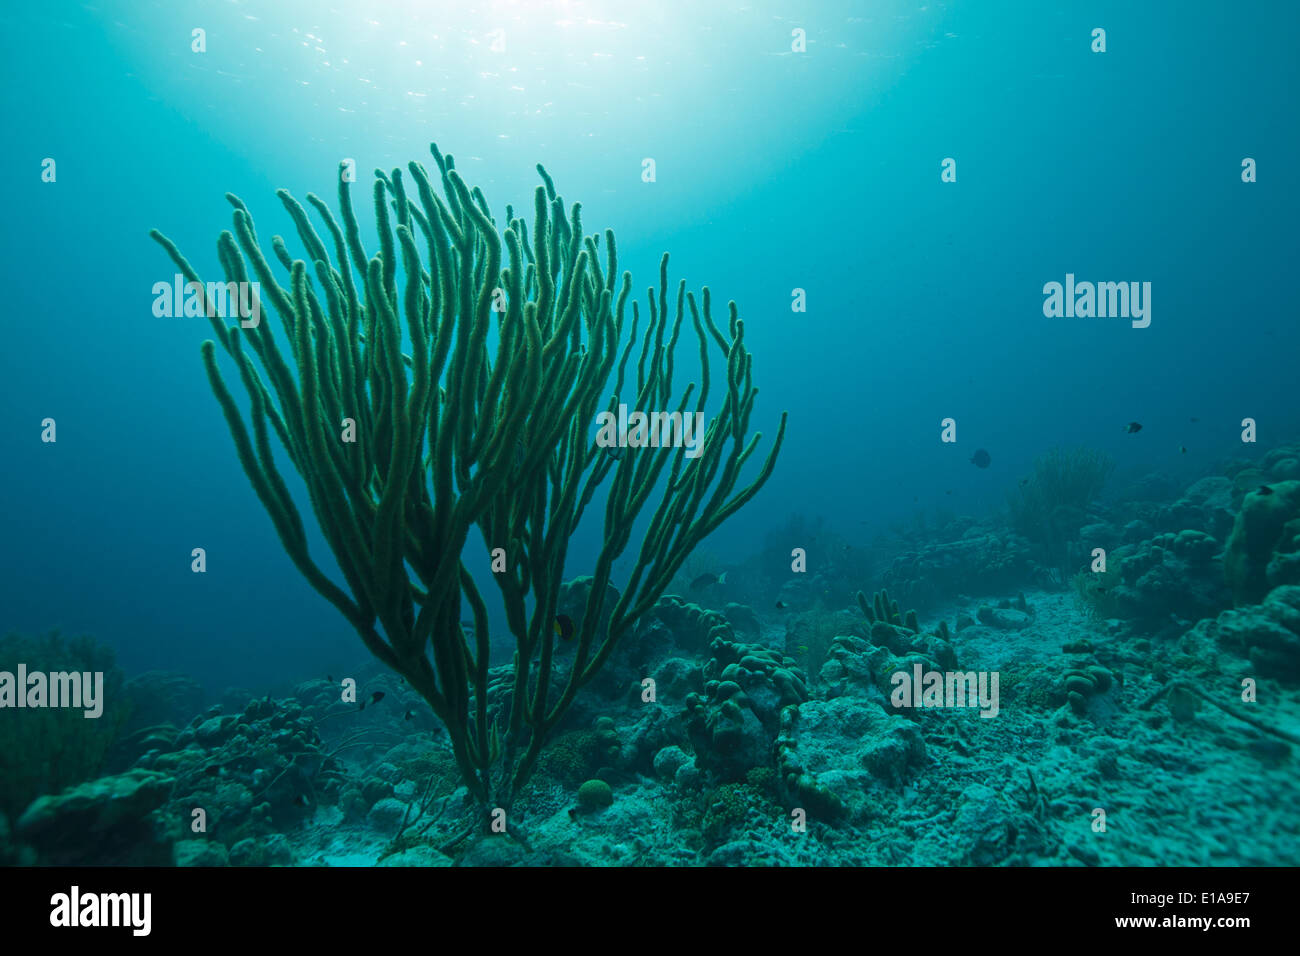 Enorme canna da mare (Plexaurella nutans) nel mare dei Caraibi intorno a Bonaire. Divesite Andrea 1. Grote zeeroede. Foto V.D. Foto Stock